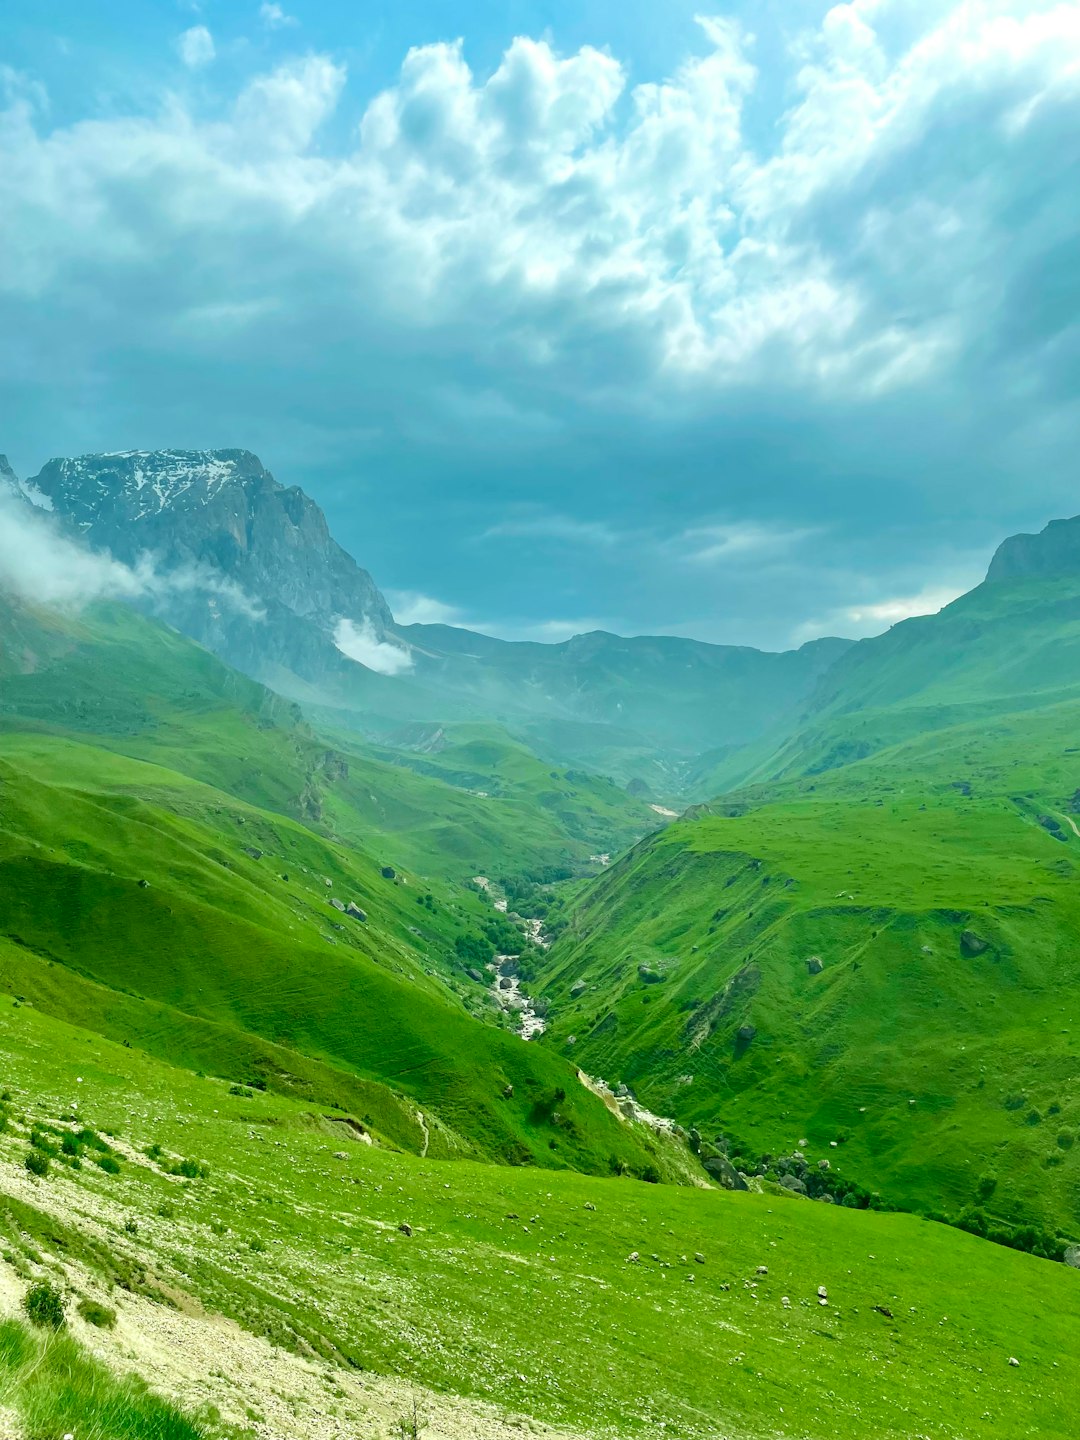 Mountain photo spot Laza Azerbaijan